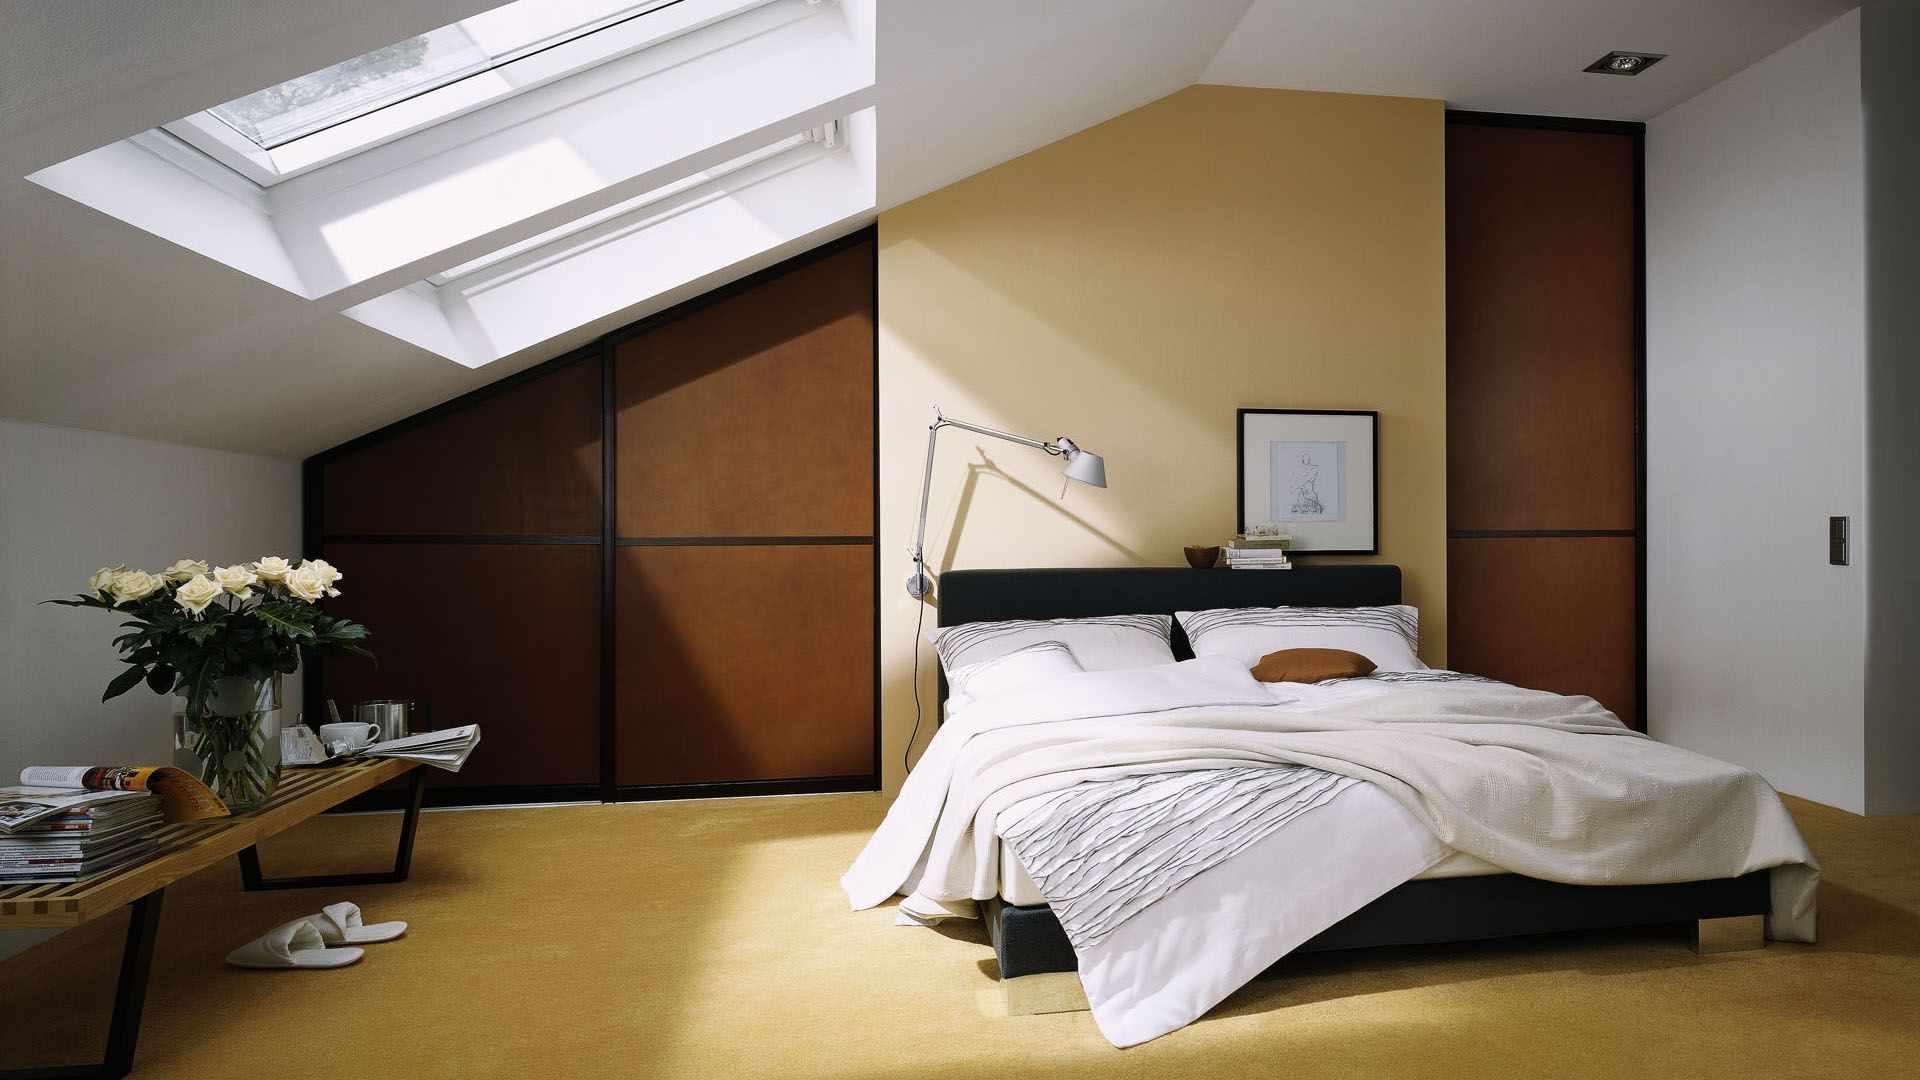 גרסה של העיצוב הבהיר של חדר השינה בעליית הגג